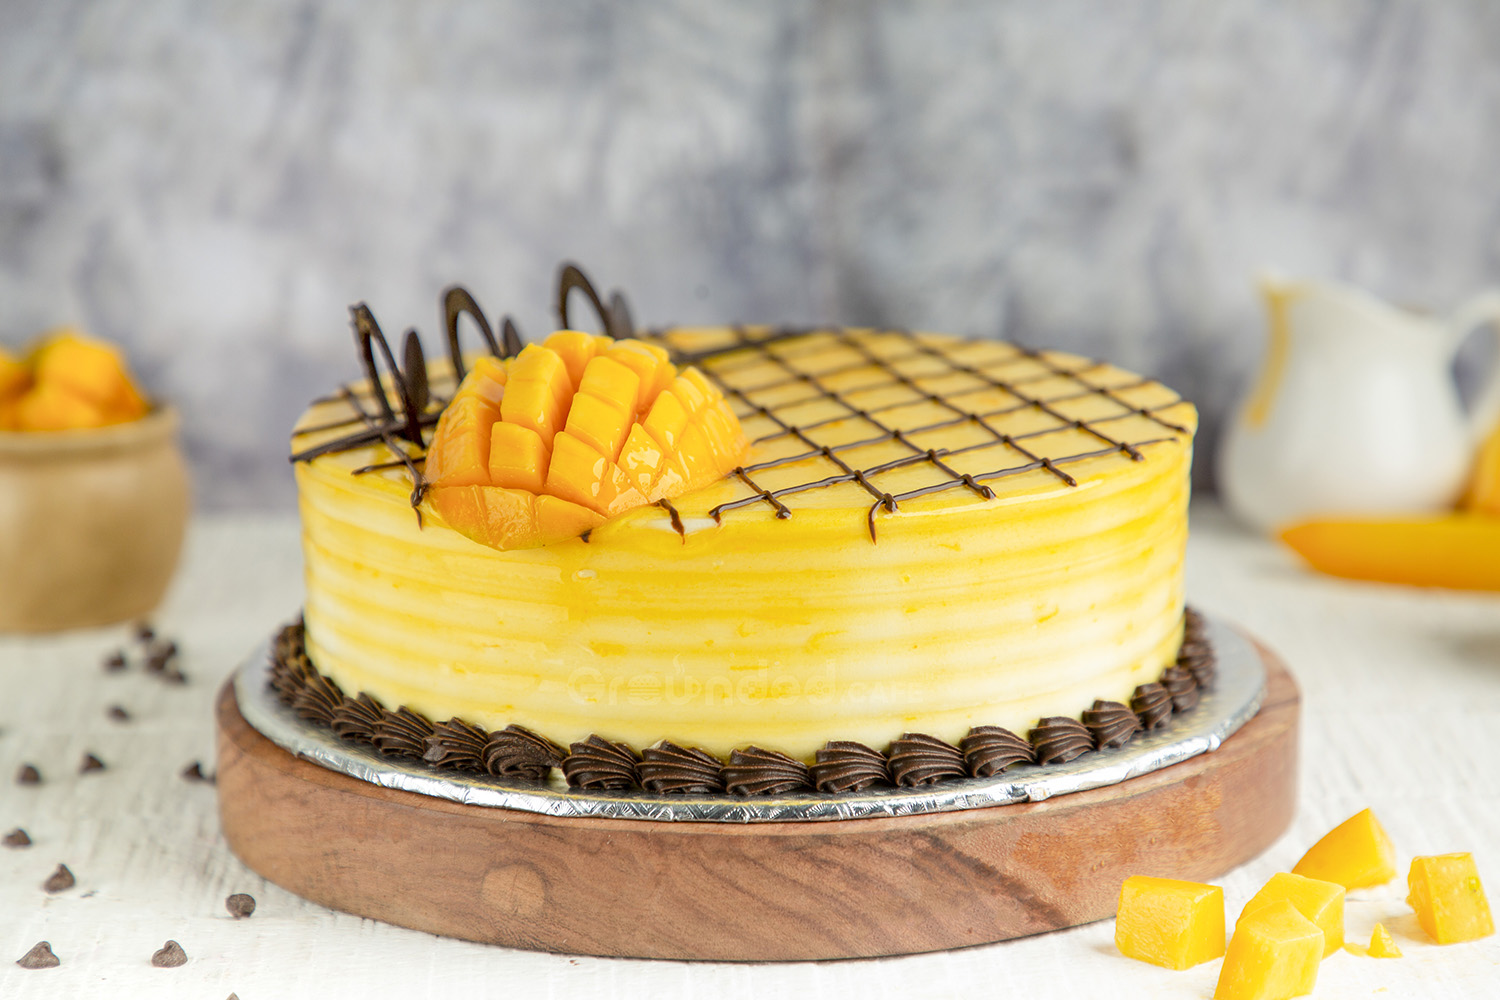 Buy Mango Chocolate Cake Online at Grounded.cafe - Premium Cake Shop